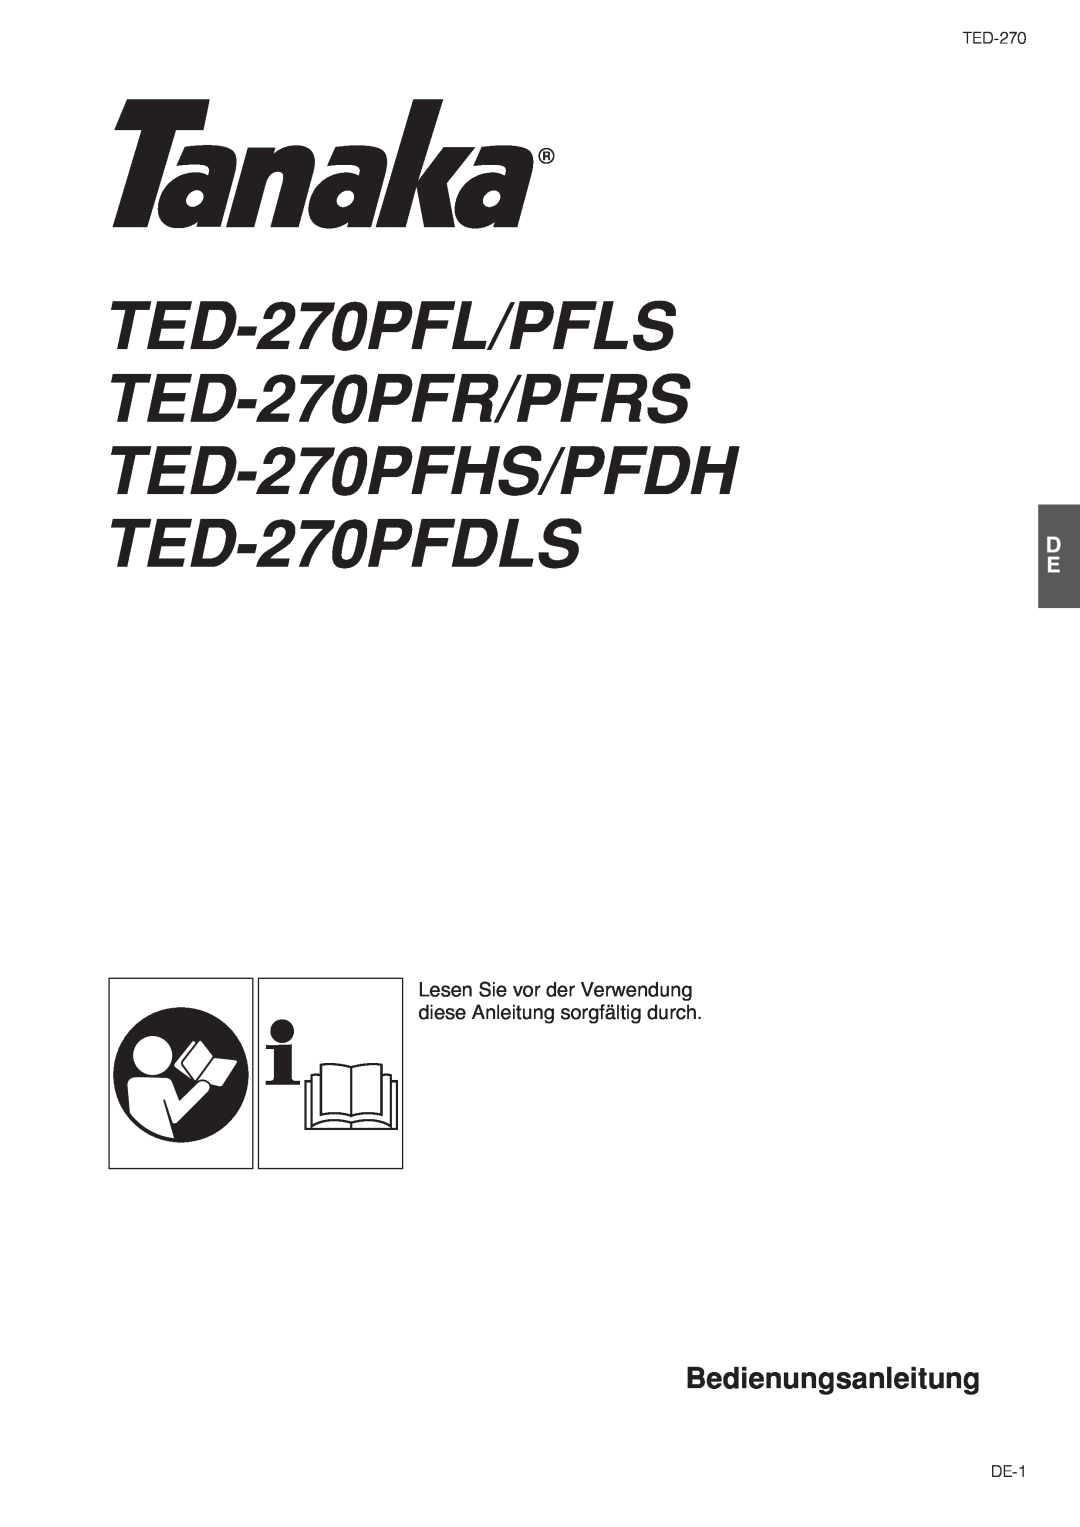 Tanaka TED-270PFDLS owner manual Bedienungsanleitung, Lesen Sie vor der Verwendung diese Anleitung sorgfältig durch, DE-1 